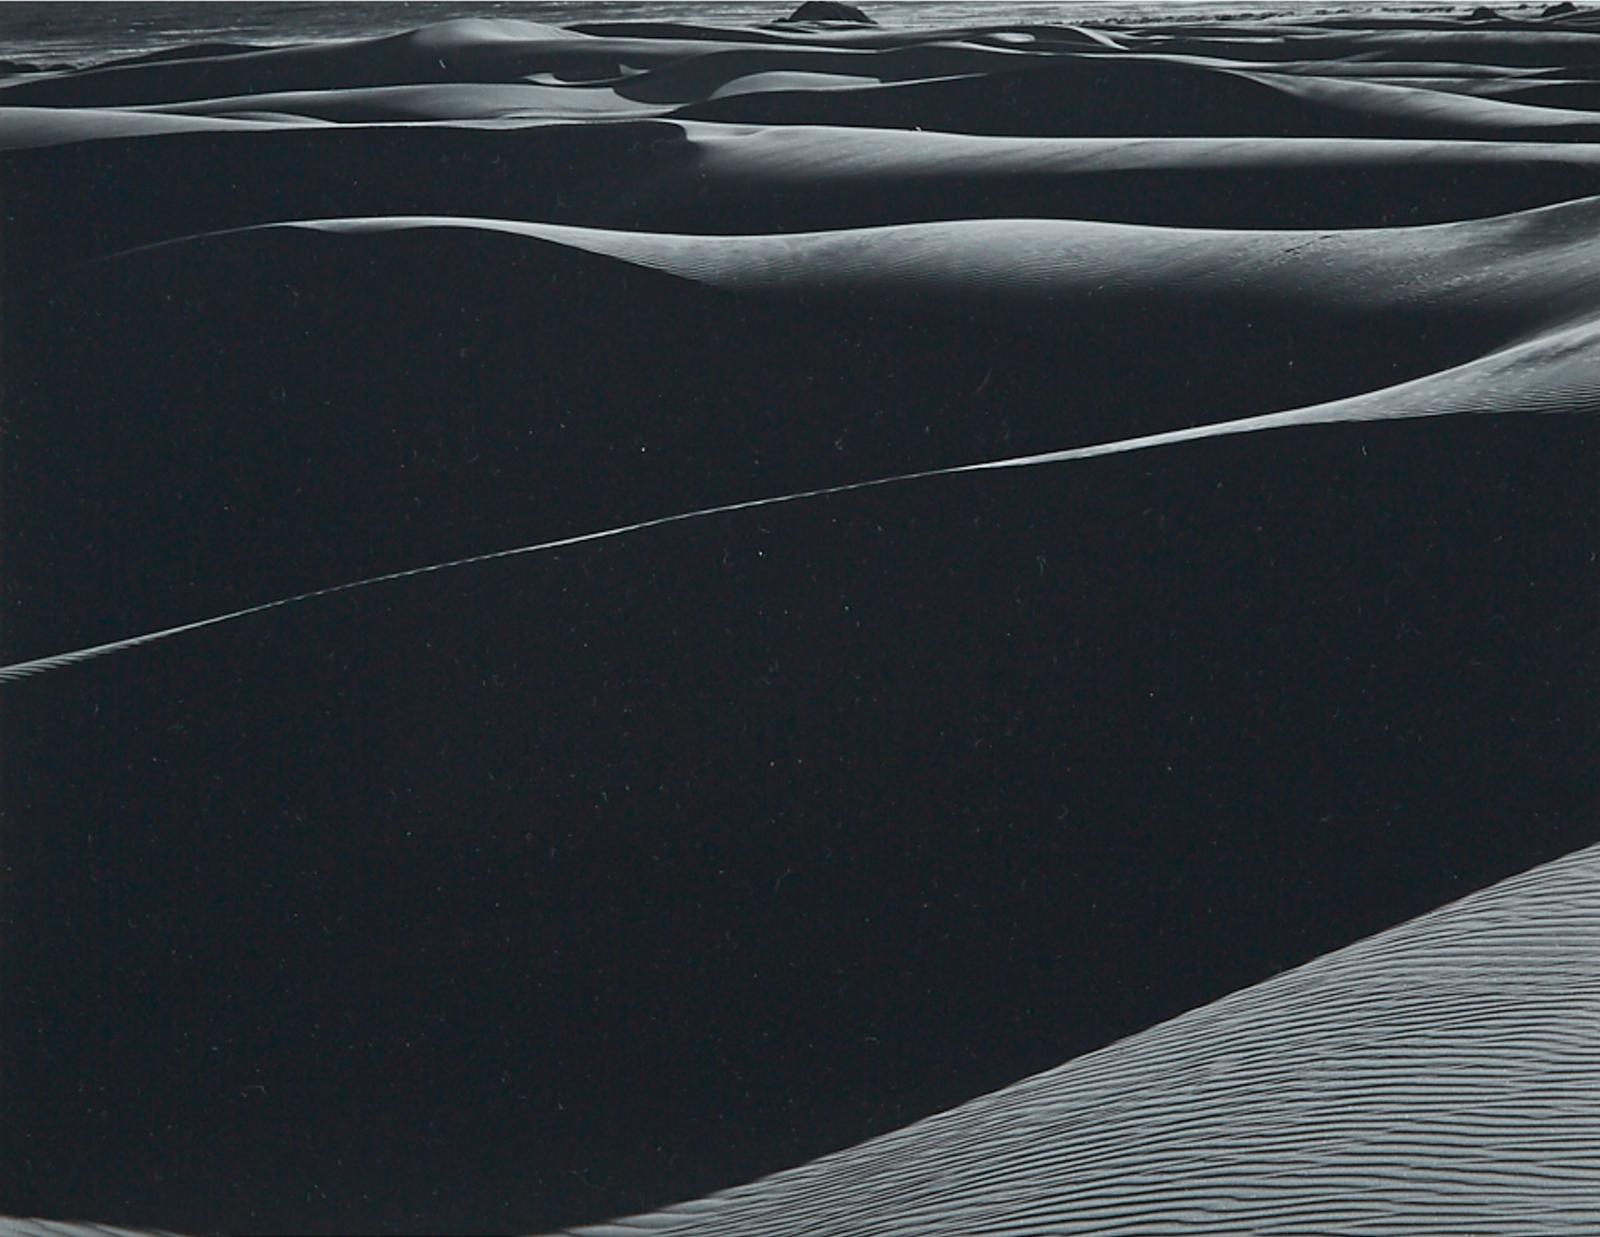 Edward Weston (1886-1958) - Dunes, Oceano, 1936